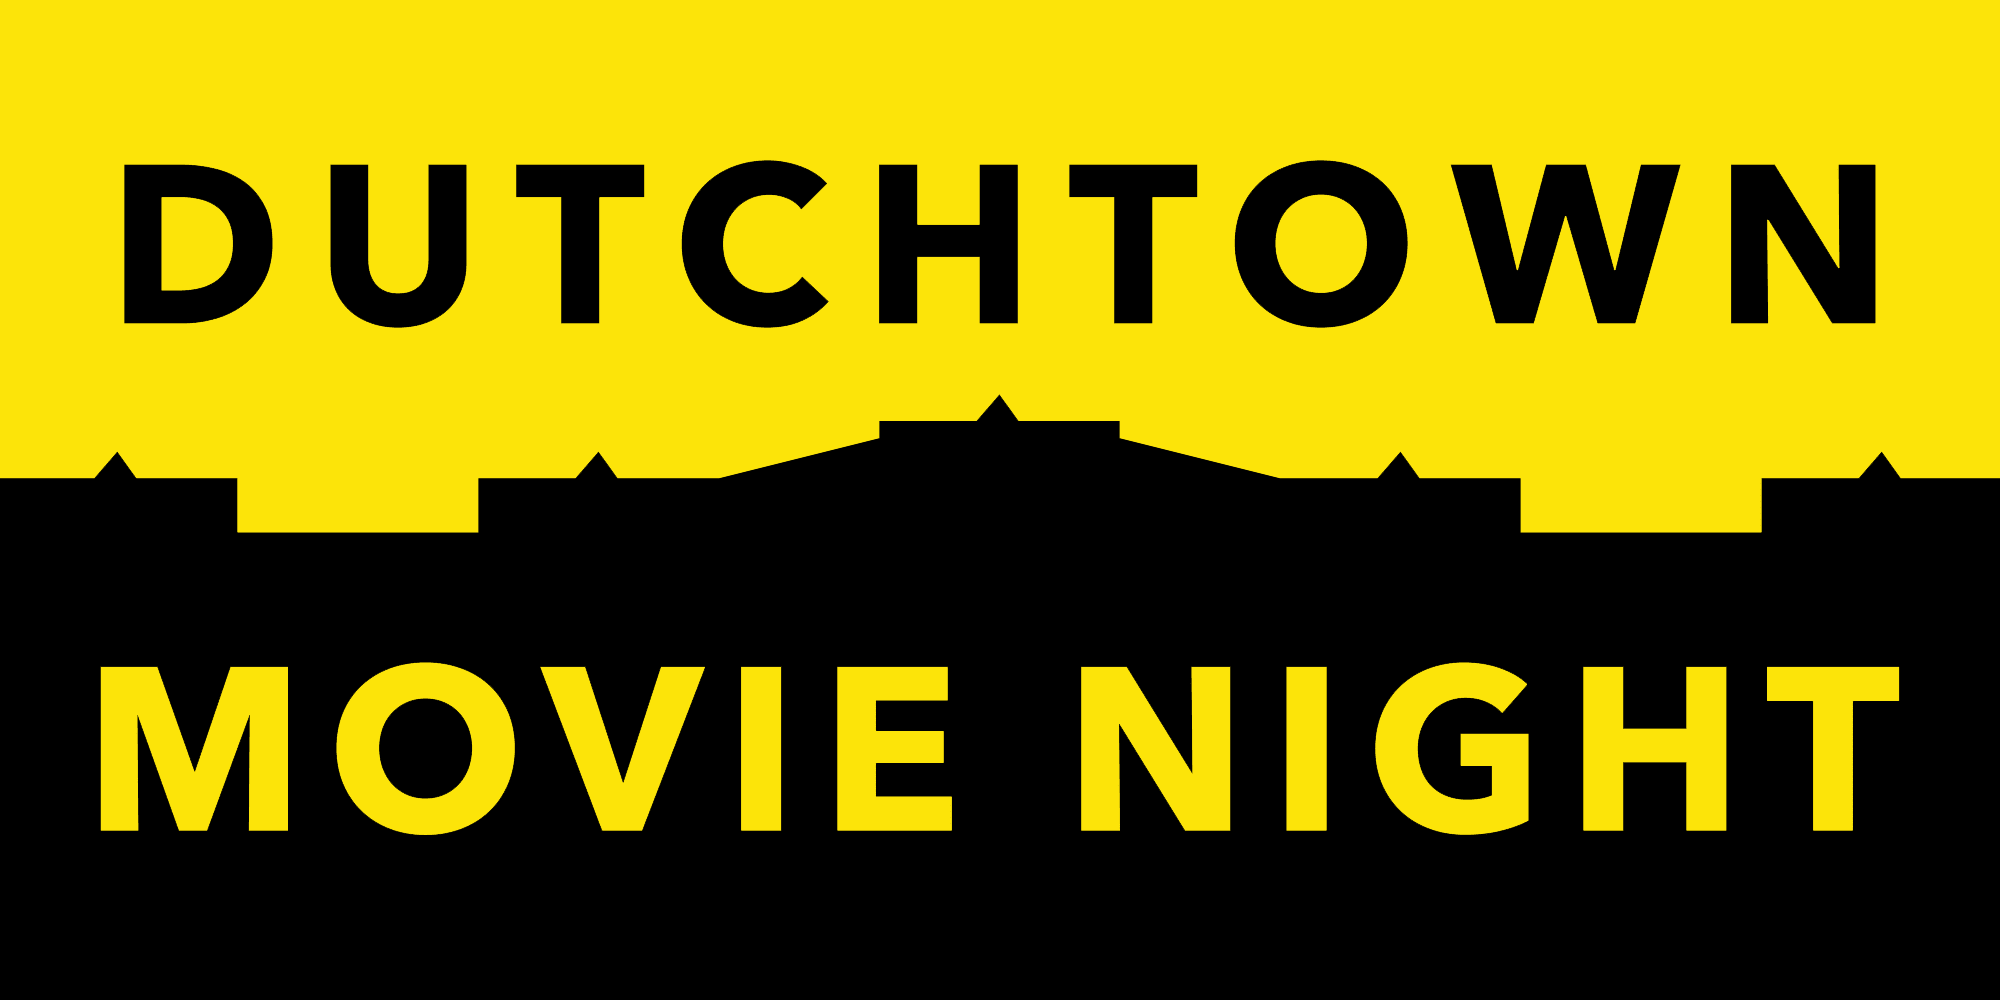 Dutchtown Movie Night.